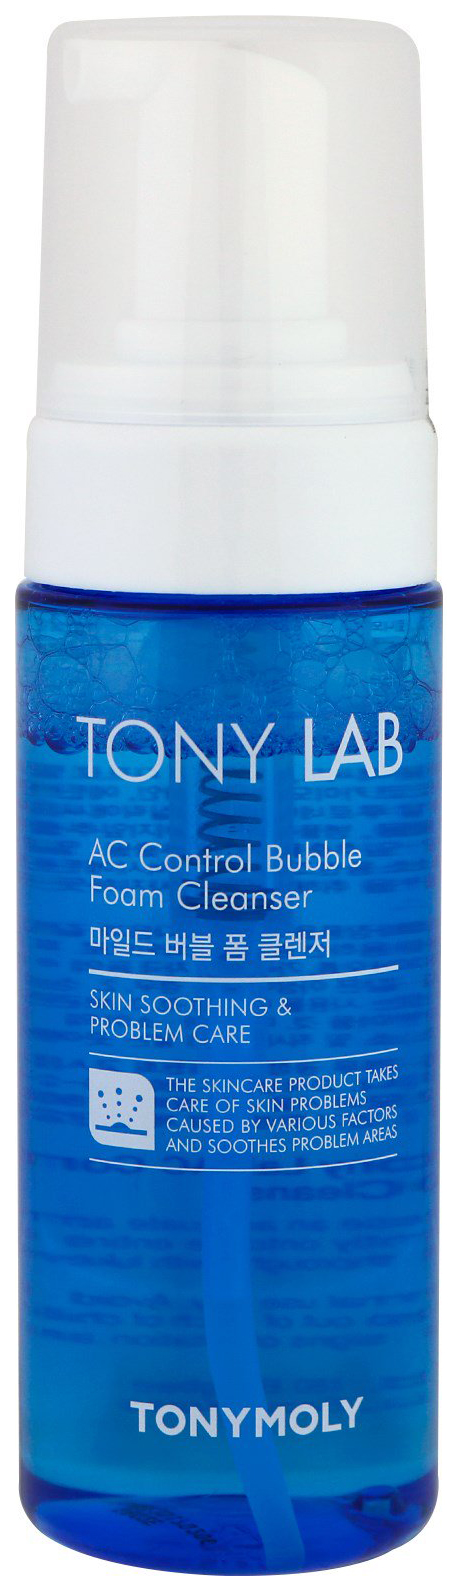 Пенка-мусс для умывания TONY MOLY Tony Lab AC Control для проблемной кожи, 150 мл milk madu пенка мусс для умывания и снятия макияжа с экстрактом алое вера 150